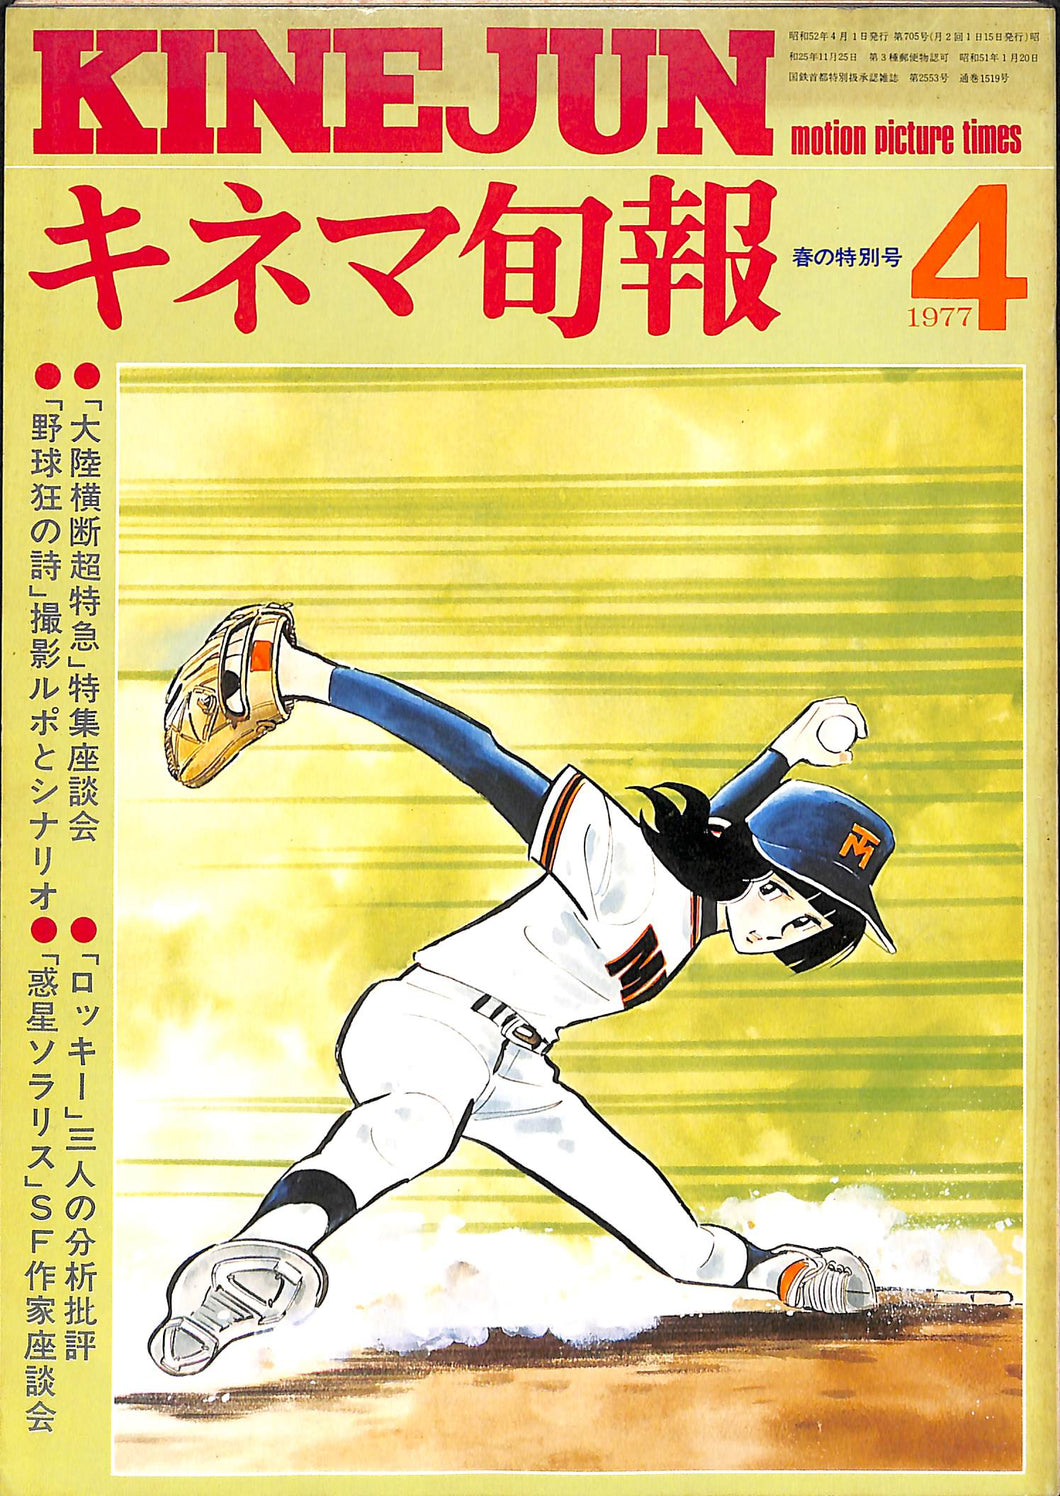 キネマ旬報 1977年4月 上旬 春の特別号 表紙:野球狂の詩 / 水島新司